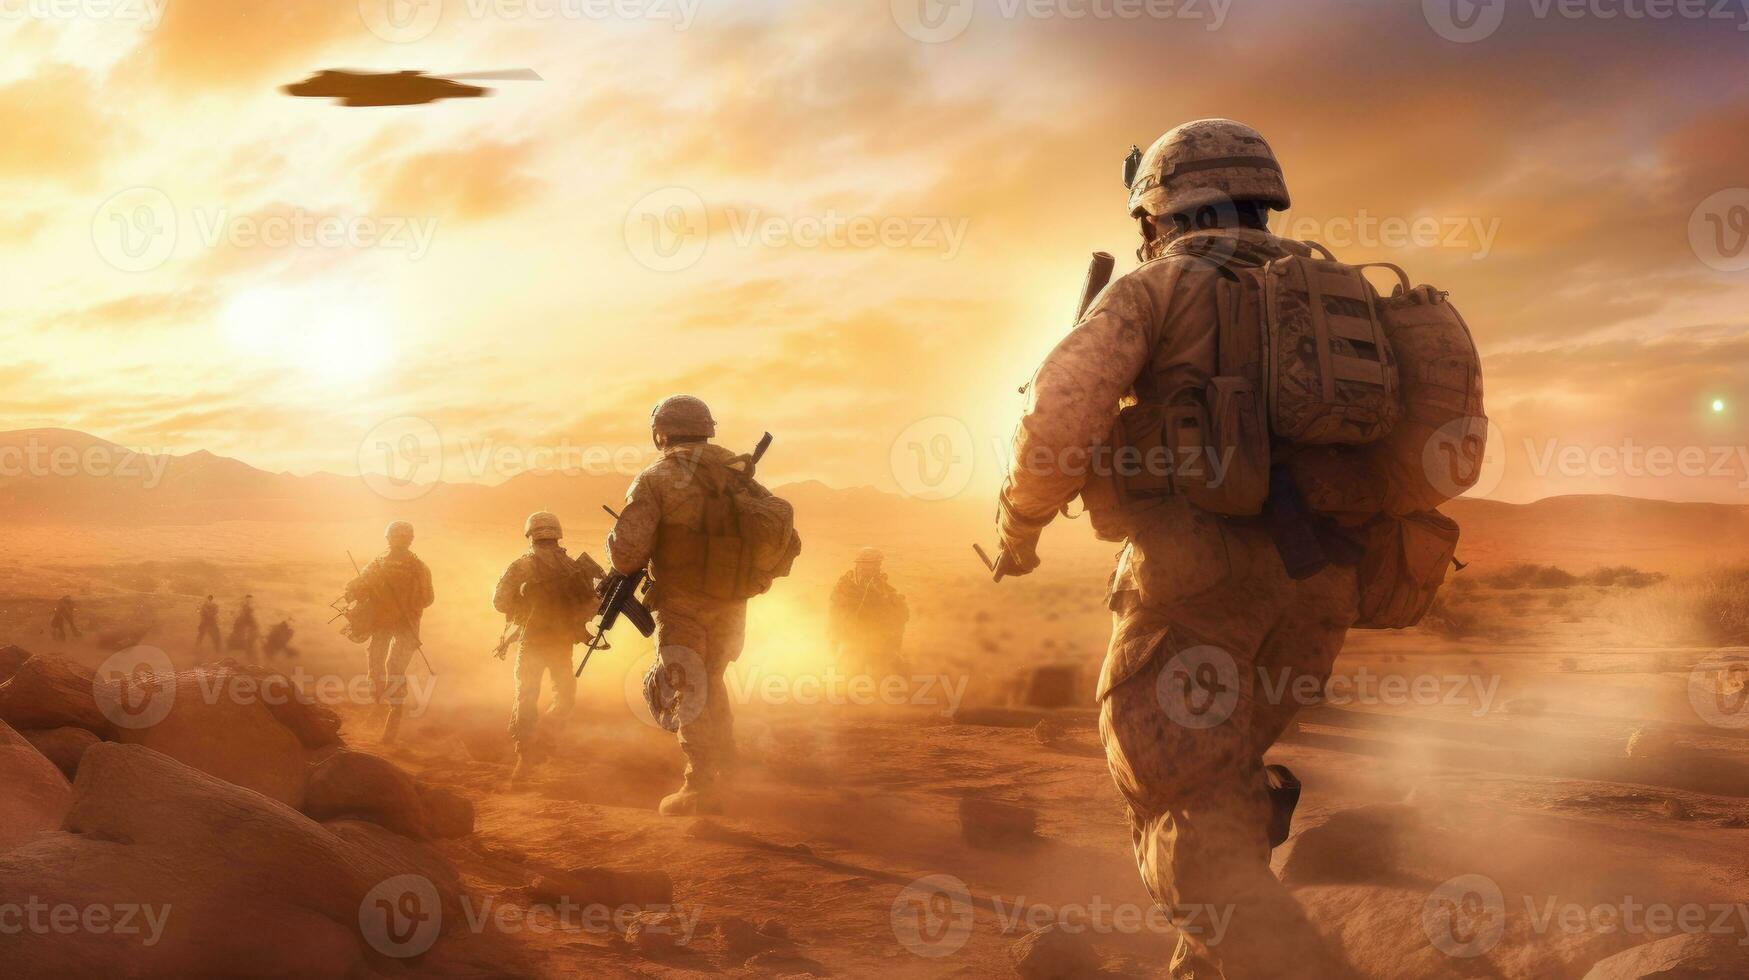 en militär fotorealistisk bild av en grupp av soldater på patrullera i en öken- miljö, sand och damm virvlande runt om dem, ett soldat i de förgrund kontroll deras miljö foto